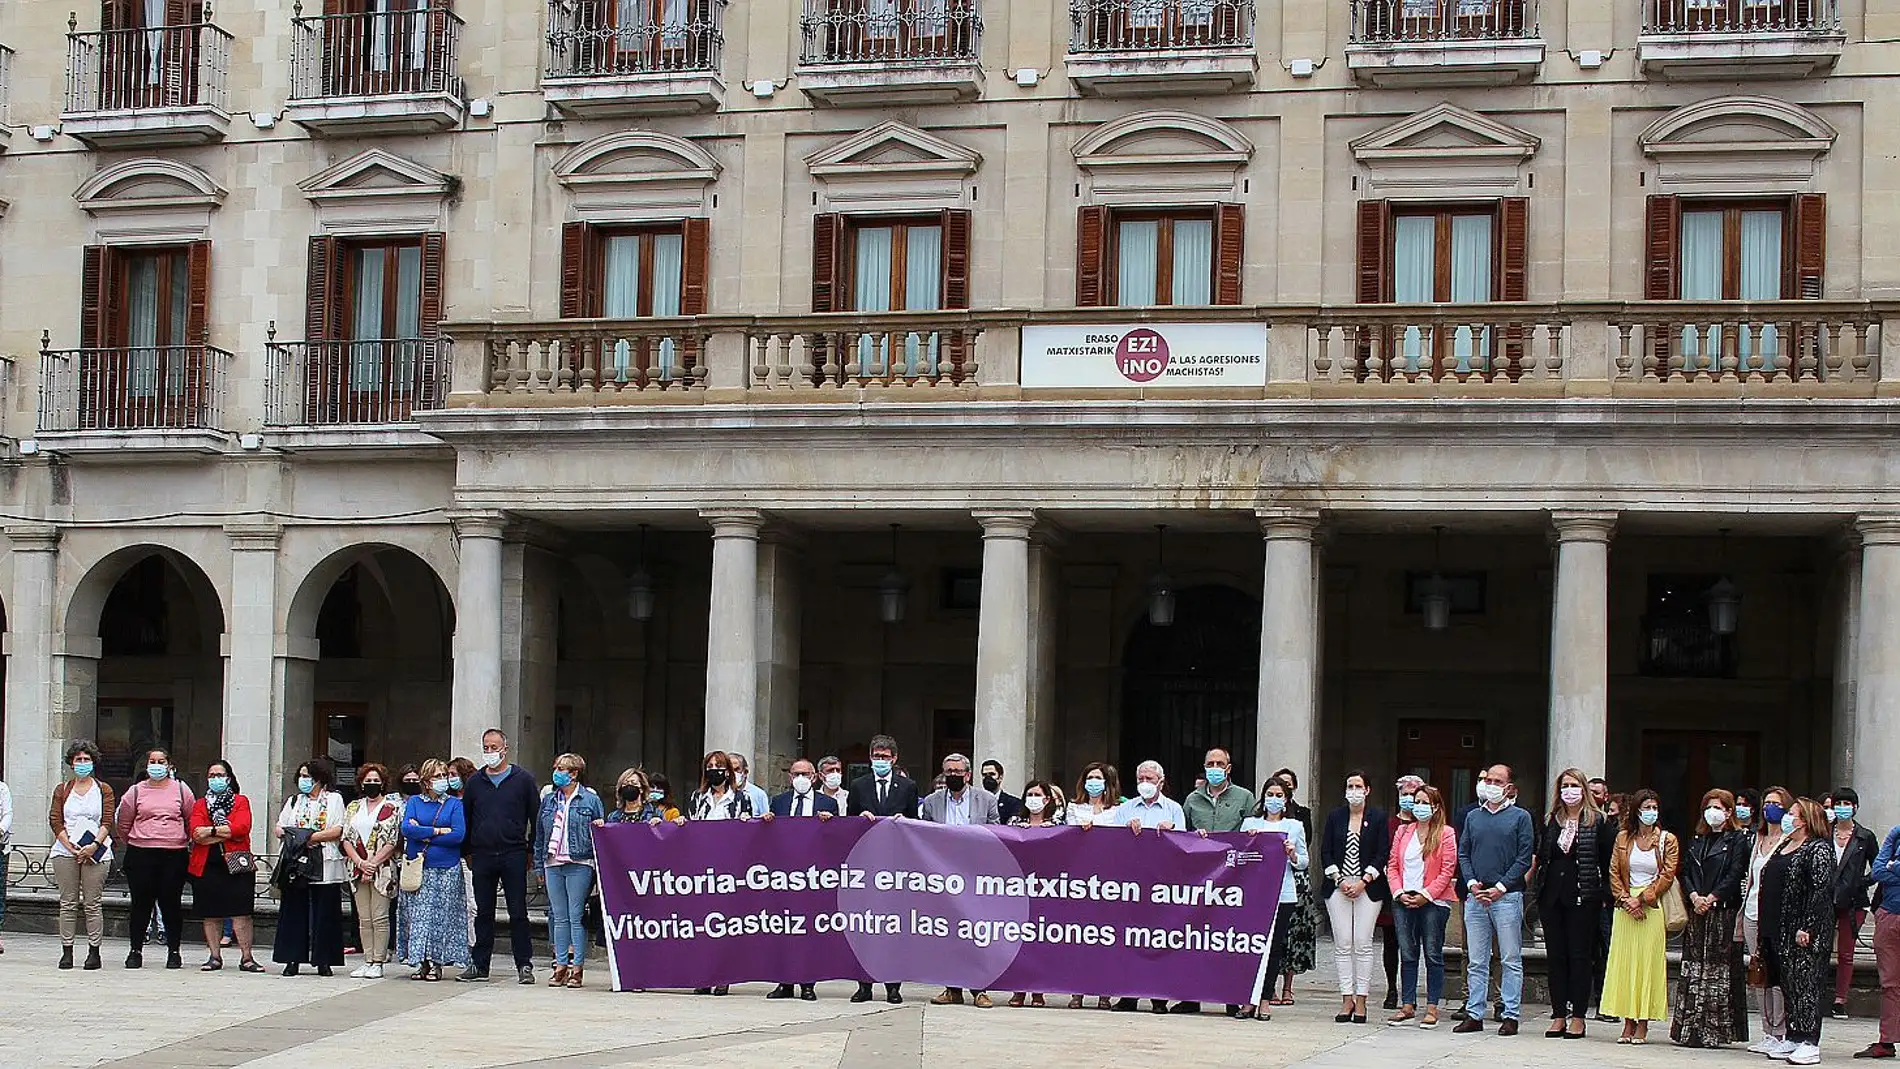 Vitoria-Gasteiz condena el asesinato machista 